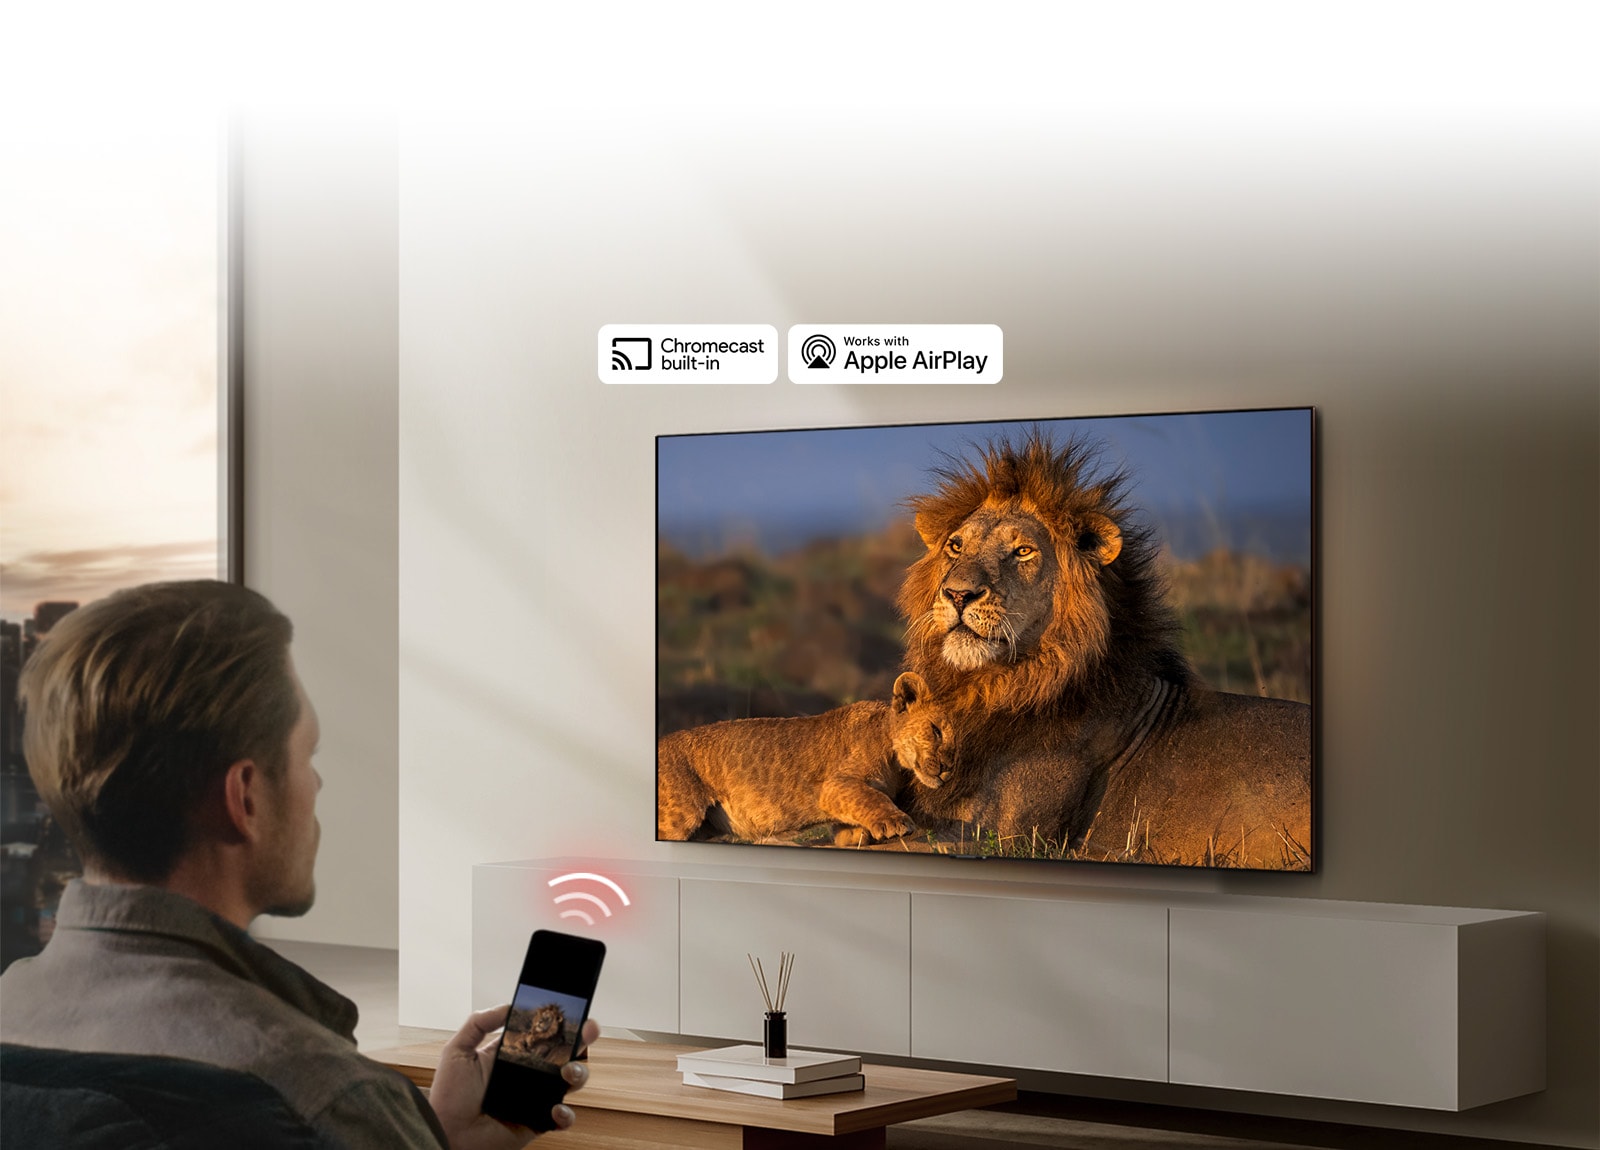 Elutoa seinale kinnitatud LG TV, kus kuvatakse lõvi ja lõvikutsikat. Mees istub esiplaanil nutitelefoniga, kus on pilt samadest lõvidest. Nutitelefoni kohal kuvatakse graafilisi kolme neoonpunast kõverat riba, mis suunavad telerile.